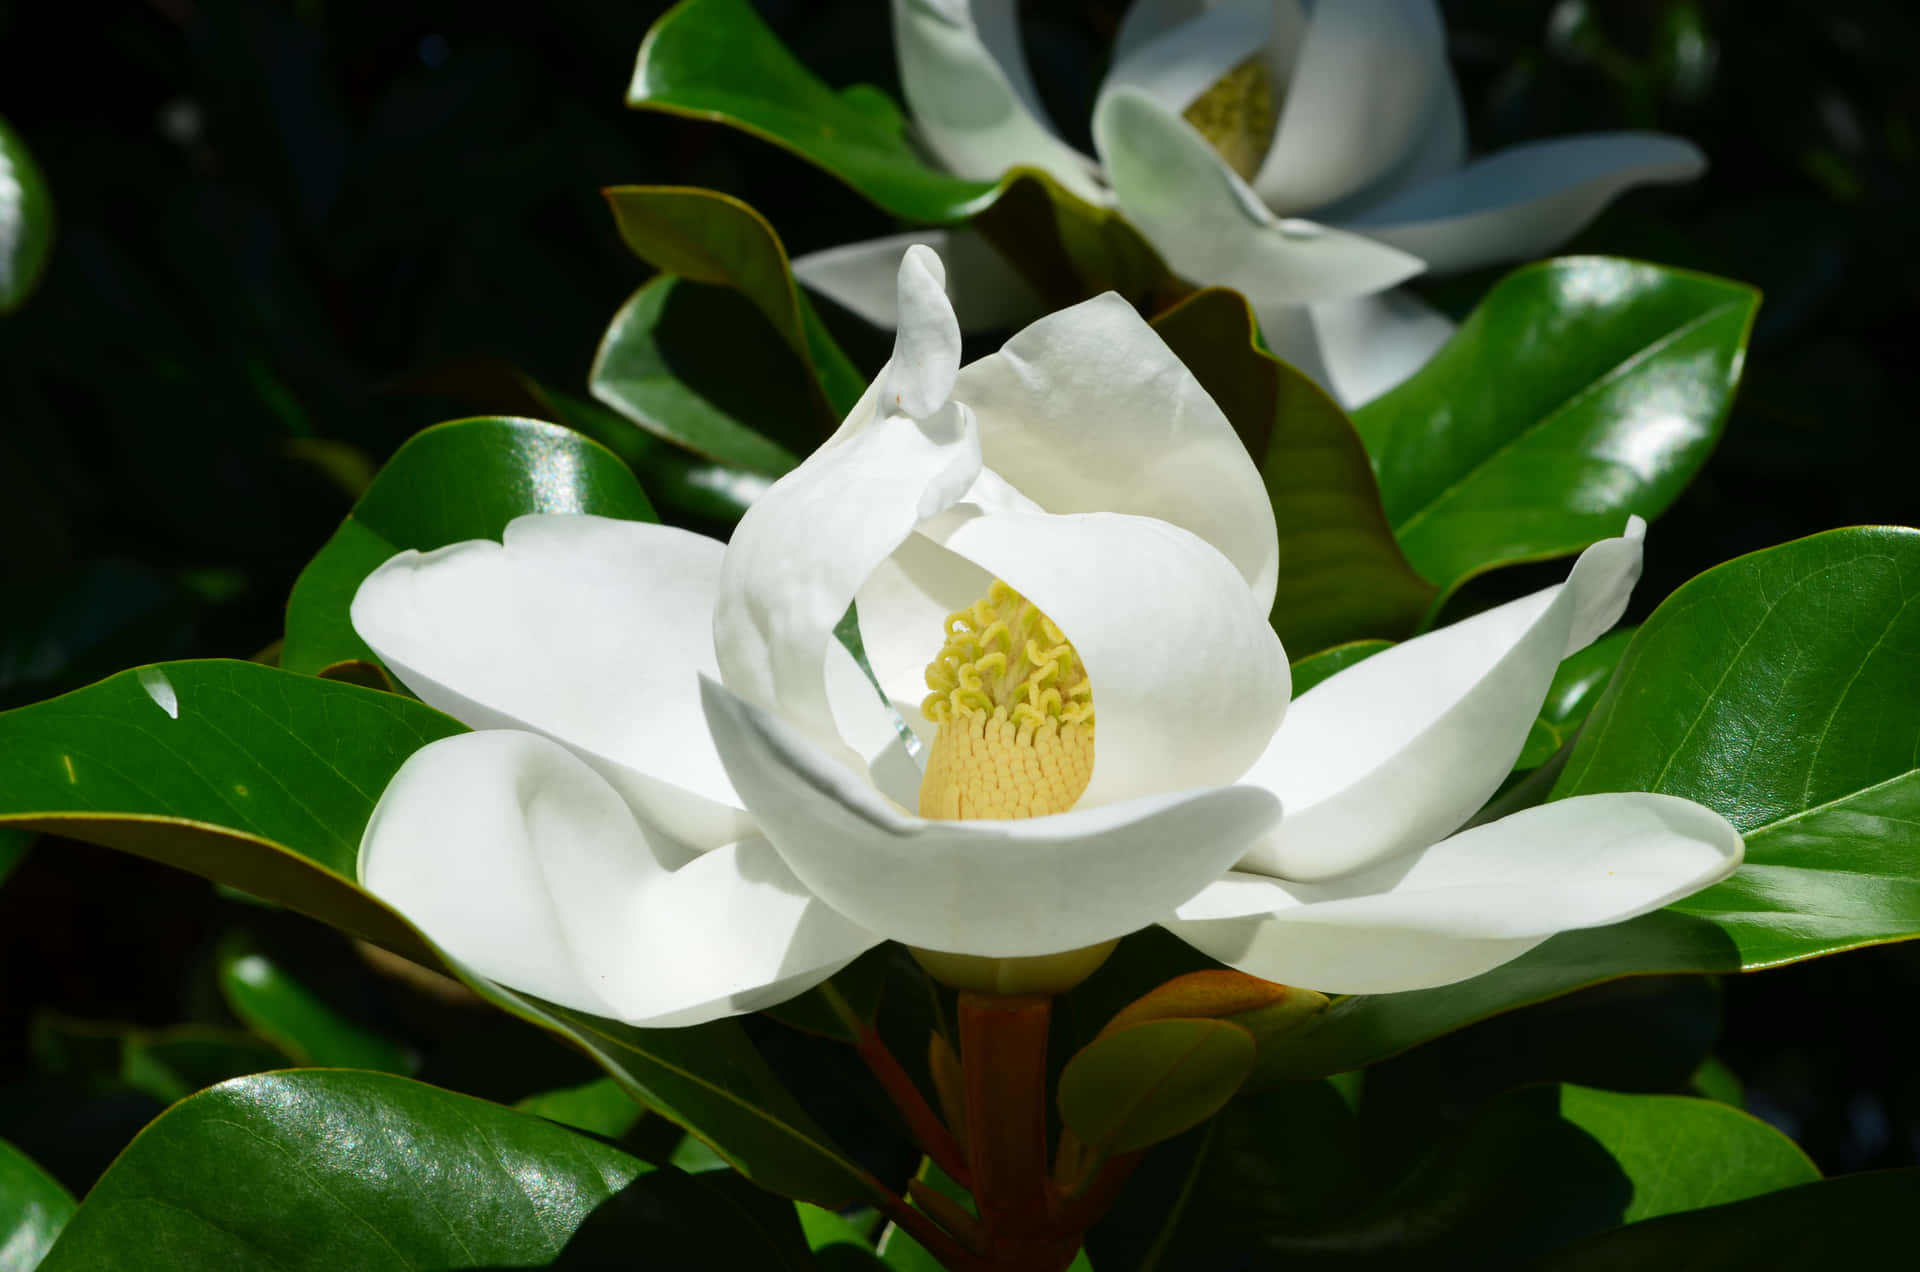 Etbillede Af En Smuk Magnolia Blomst